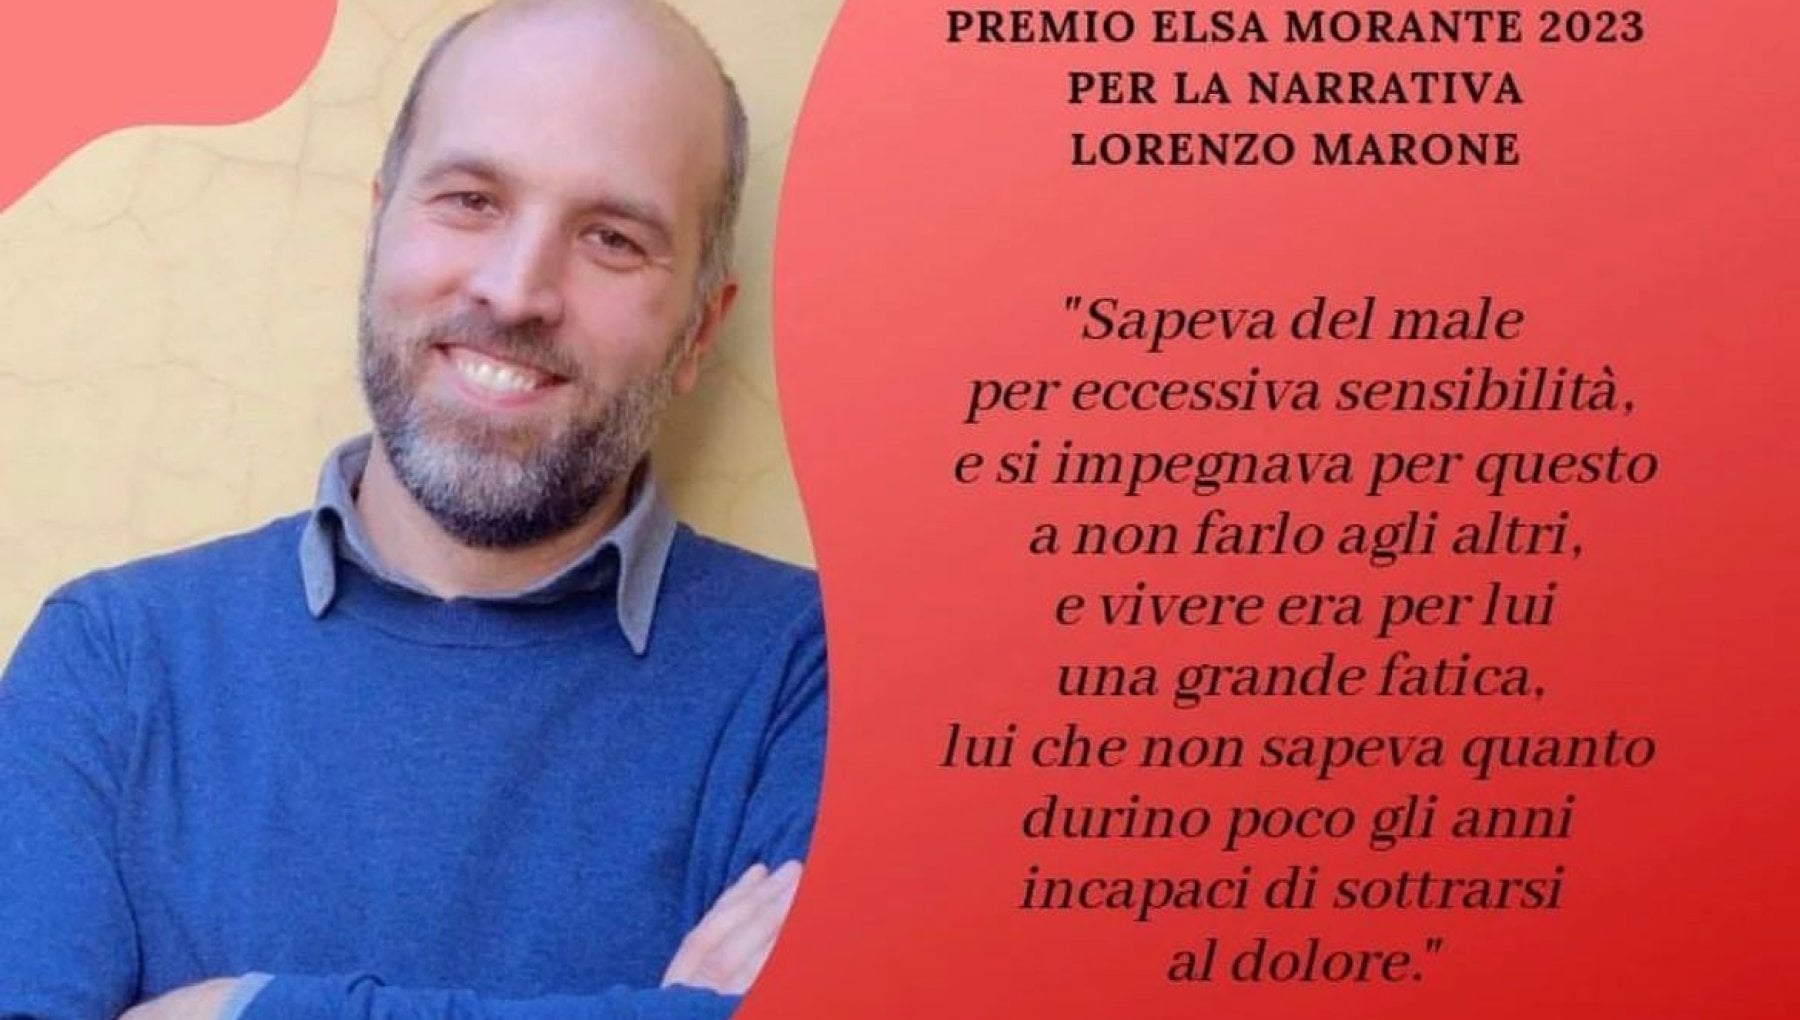 lorenzo marone premio morante